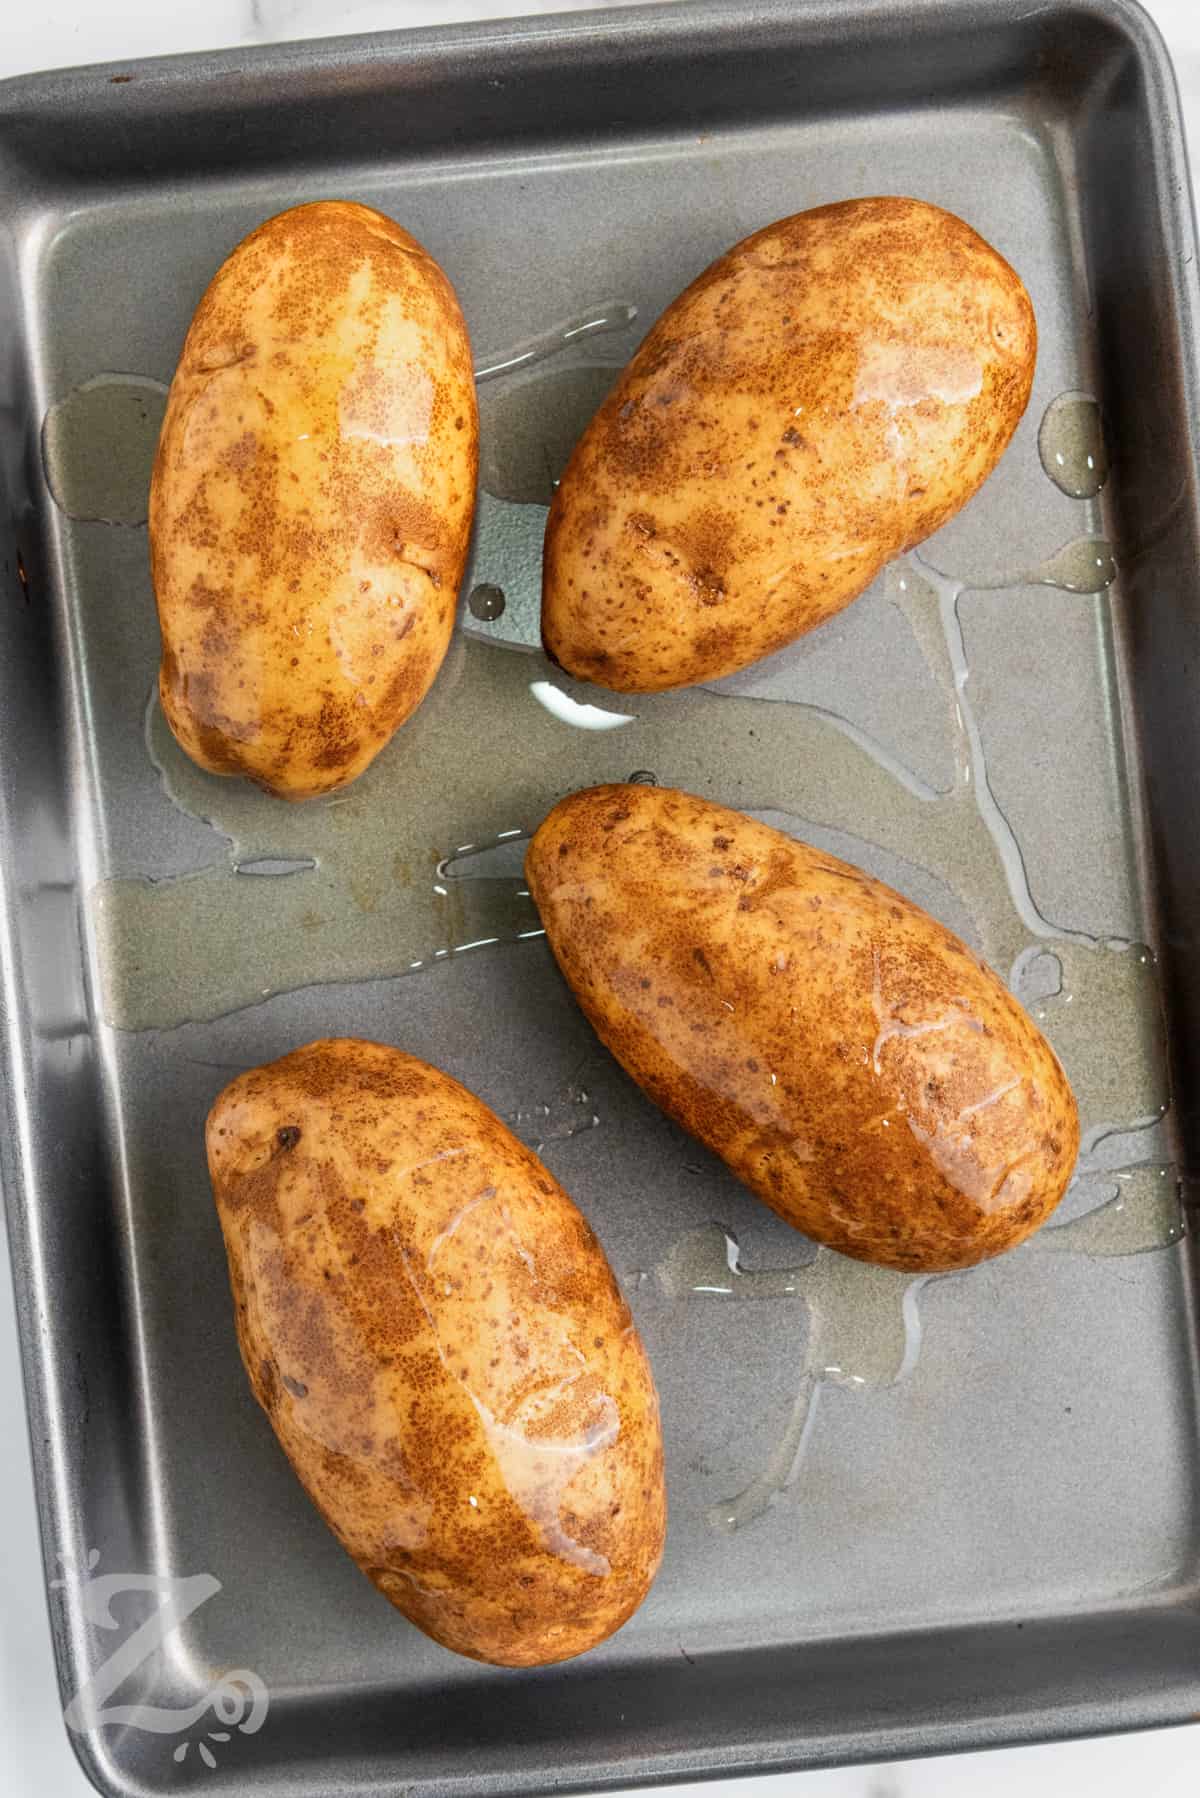 adding oil to potato skins to make Twice Baked Potatoes